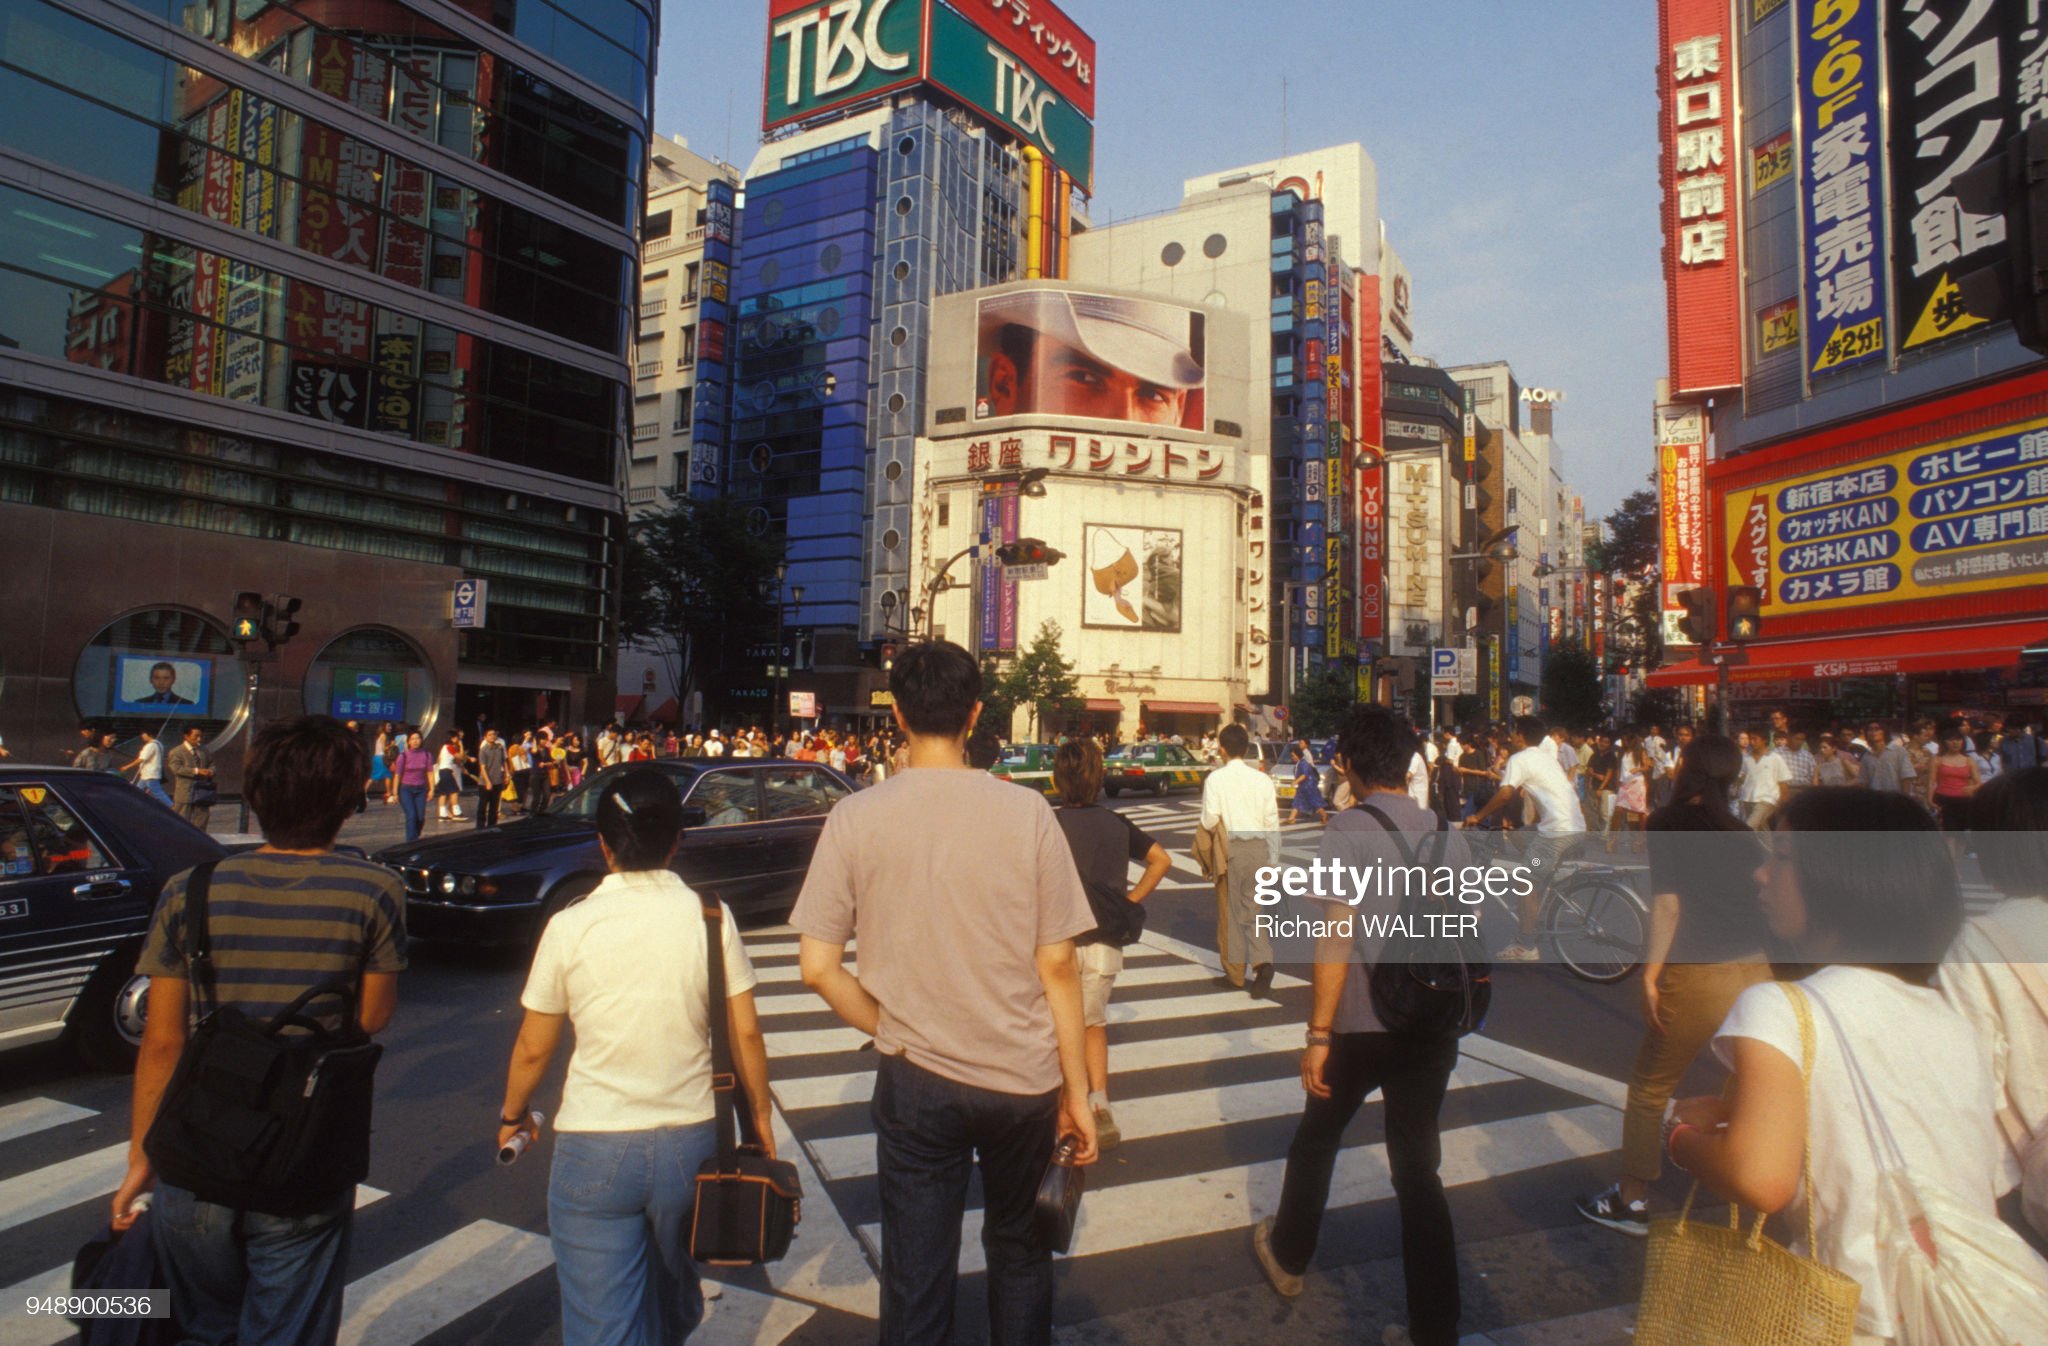 【画像あり】1999年の渋谷の写真が1.4万いいね  [808139444]\n_1